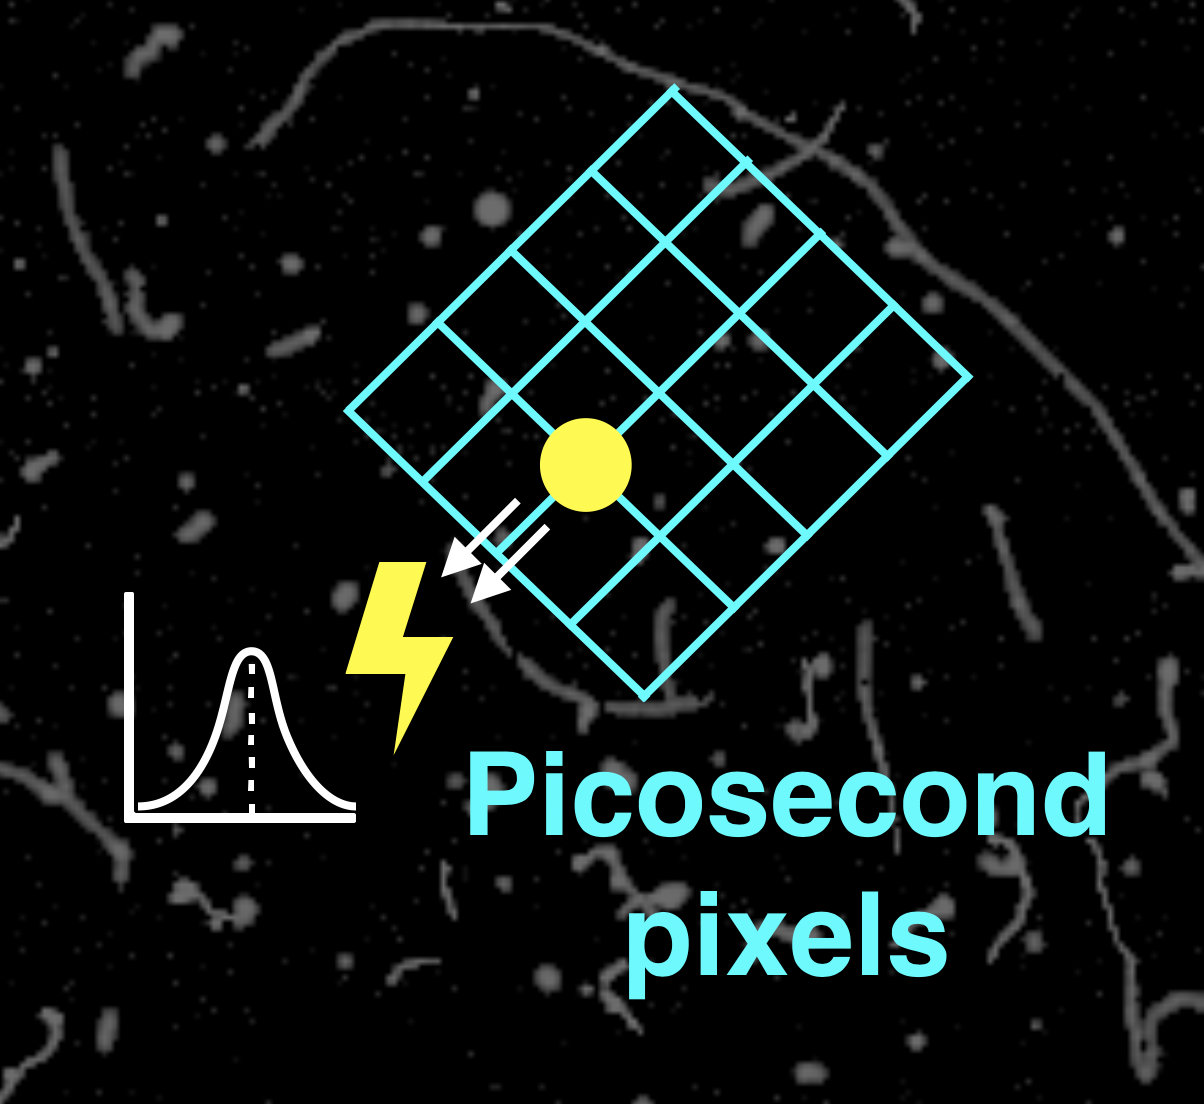 Picosecond pixel detectors